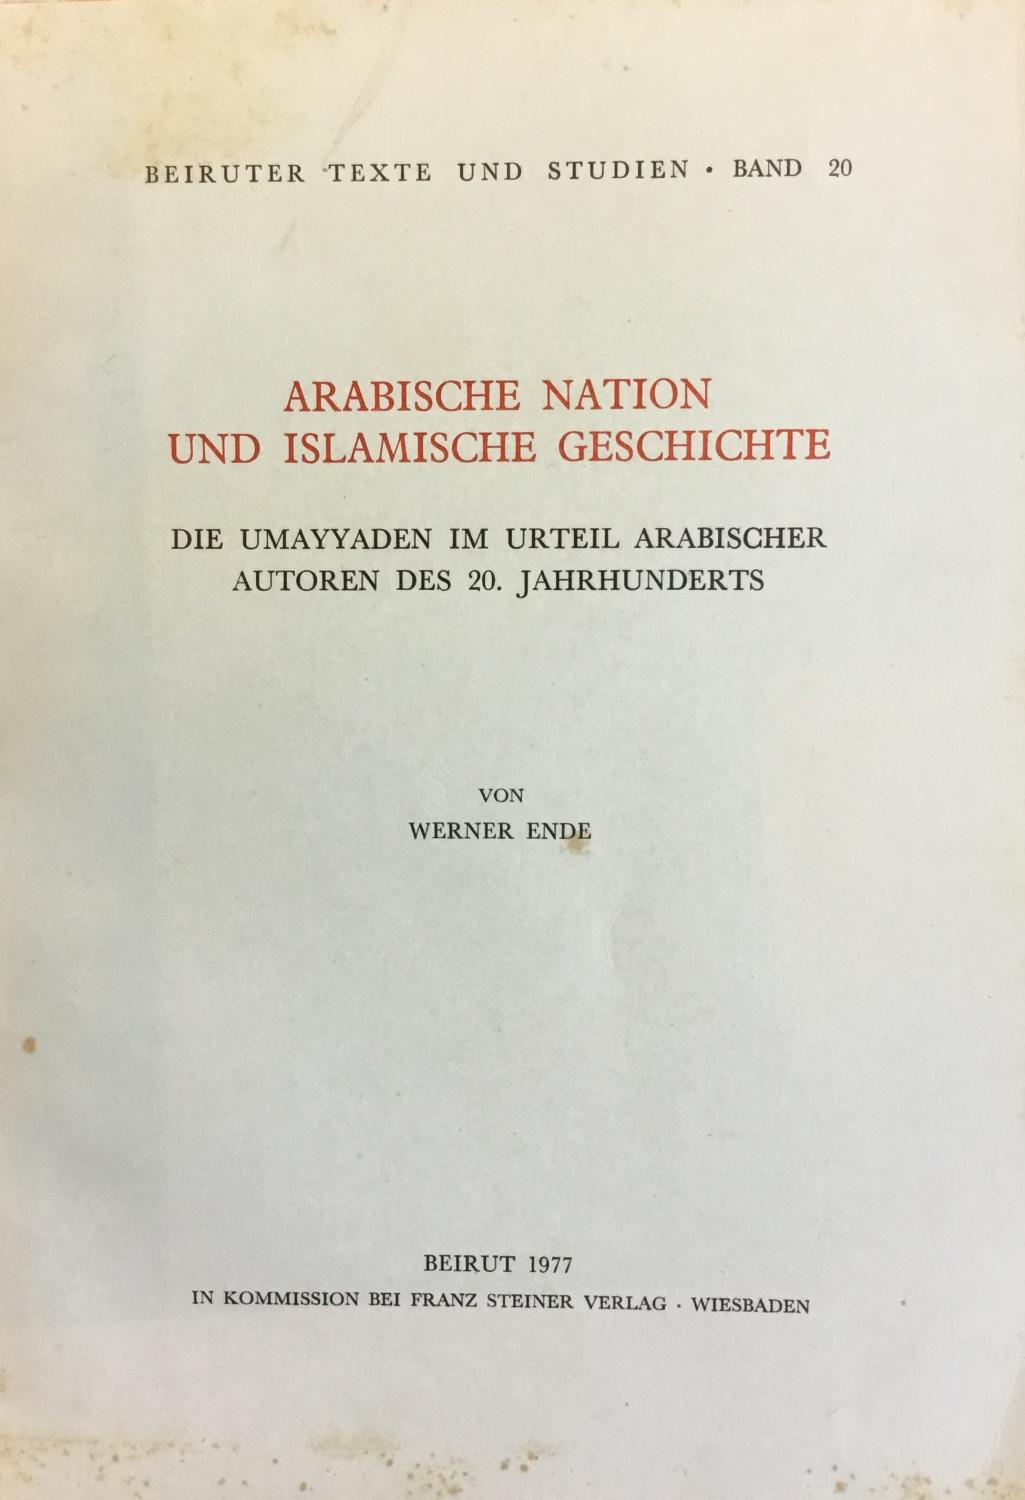 Arabische Nation Und Islamische Geschichte. Die Umayyaden im urteil Arabischer autoren des 20. jahrhunderts. - Ende, Werner.